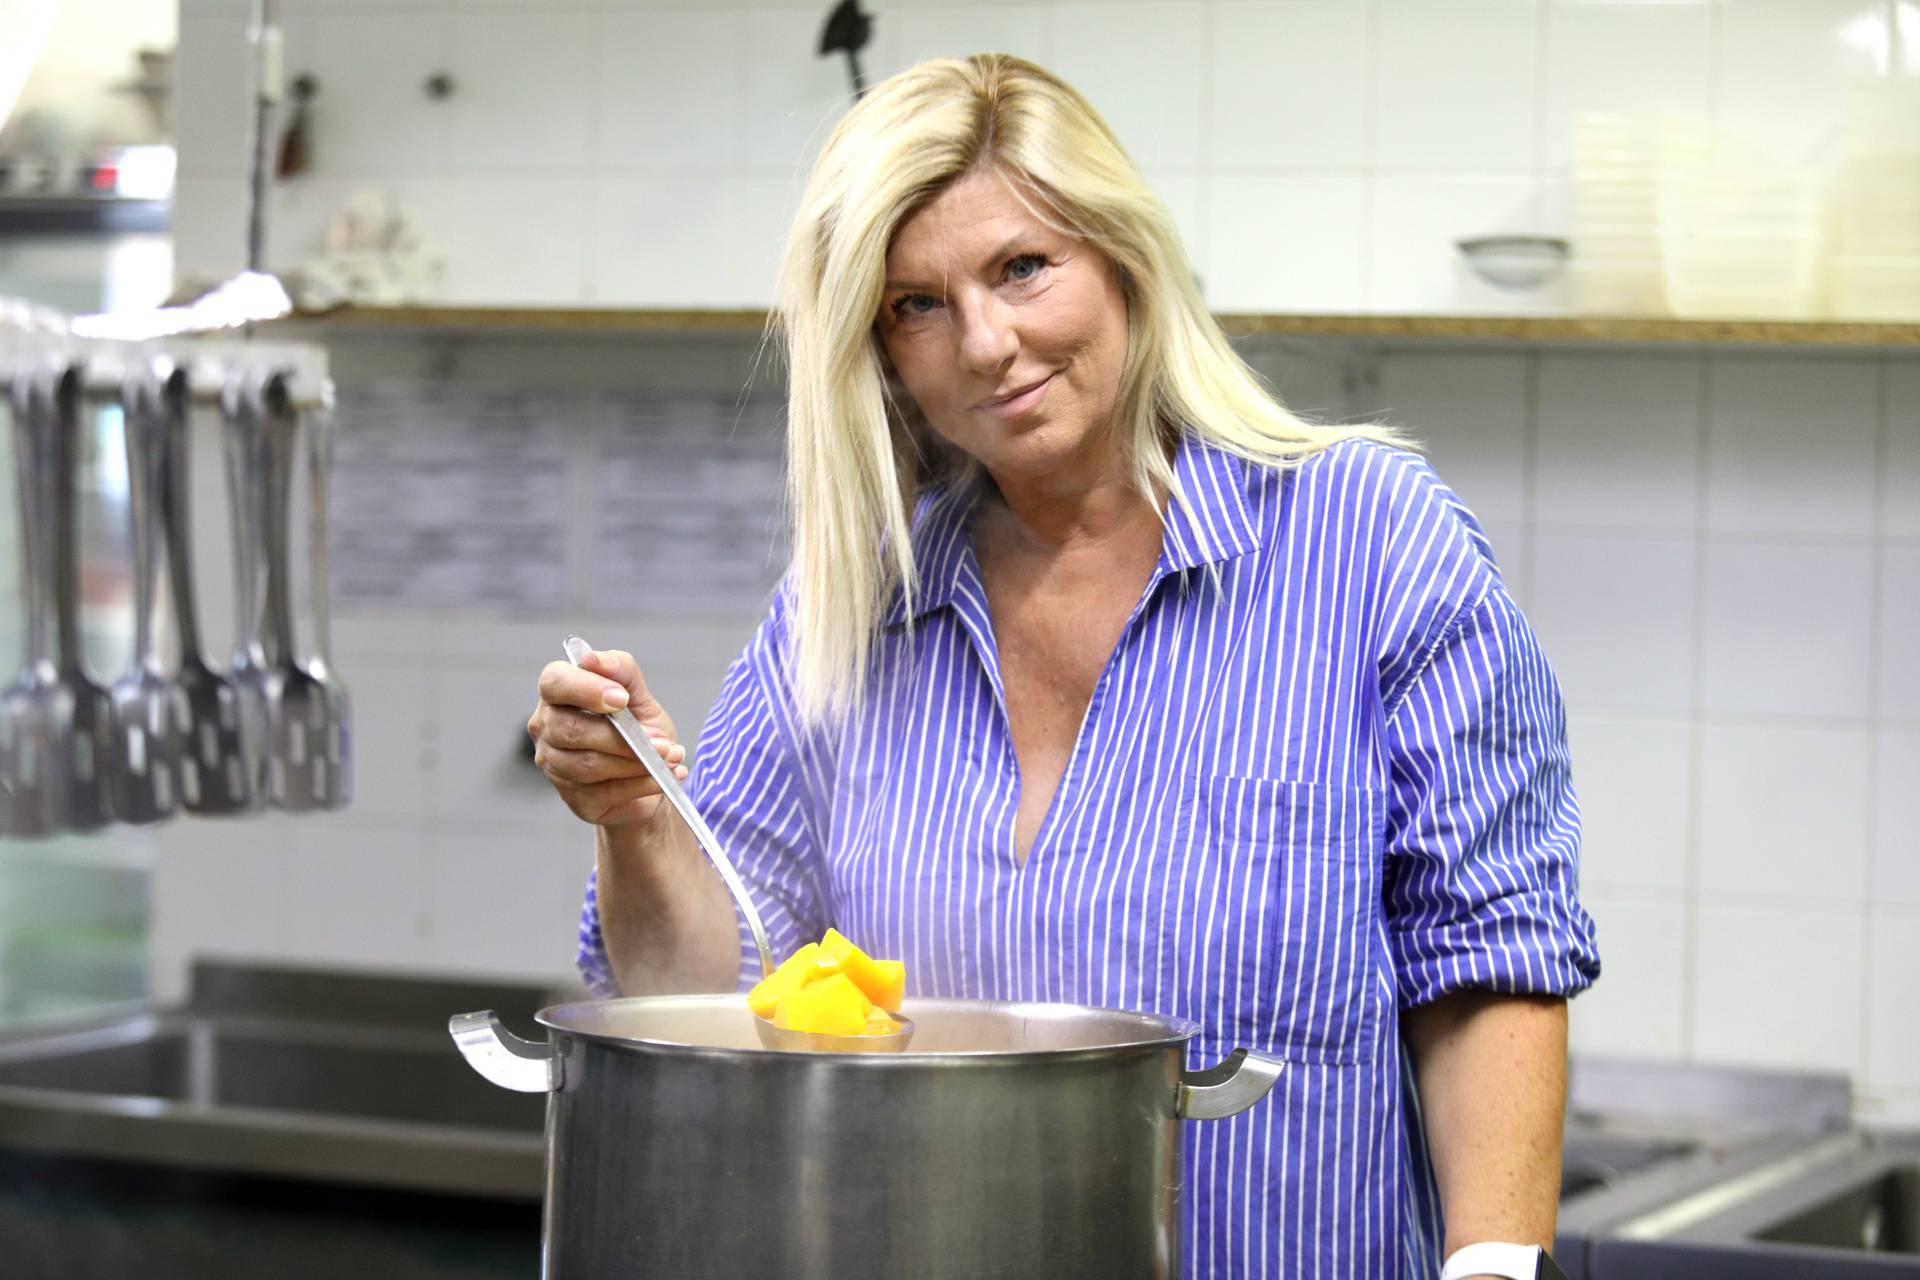 Suzy Josipović: 'Svekrvu nisam oduševila prvim kuhanjem, ali me naučila raditi burek, pitu...'